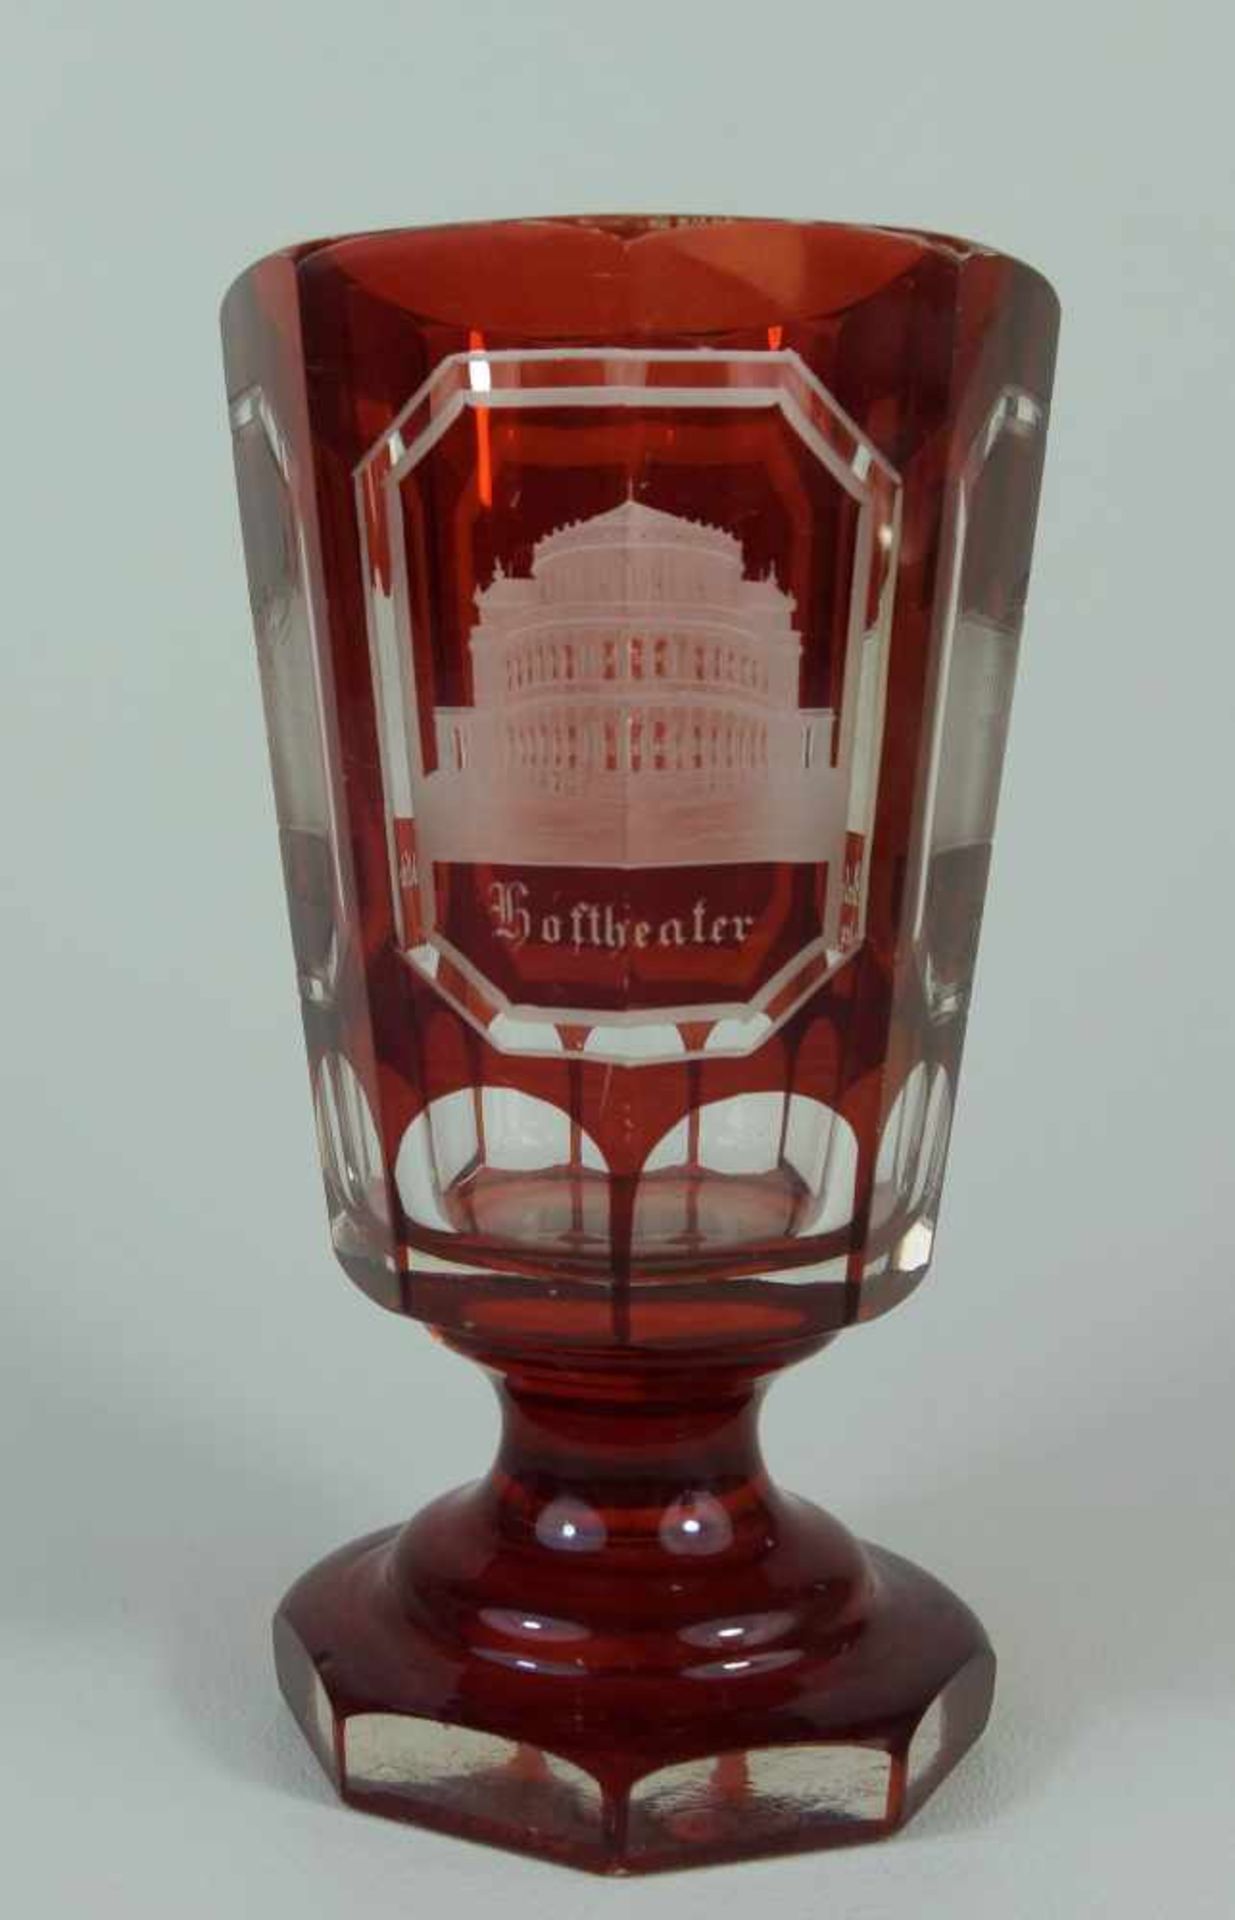 seltenes Bäderglas/ Fußbecher mit Ansichten von Dresden, dat. 1863farbloses Kristallglas, rubiniert,